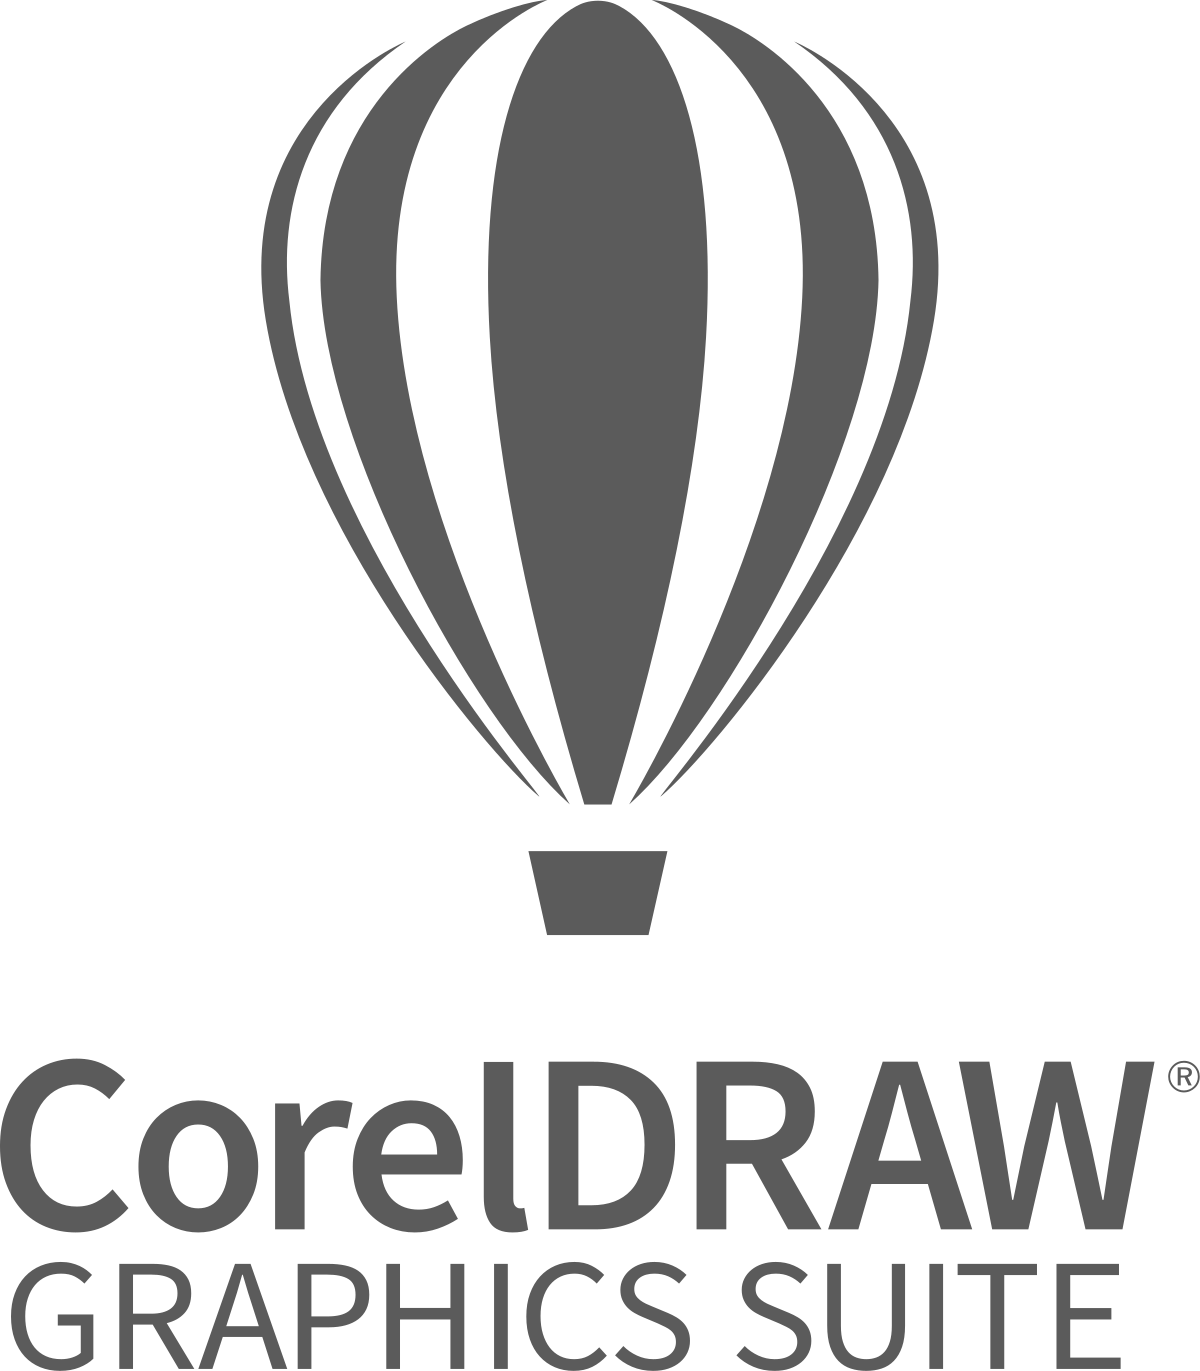 CorelDRAW Graphic Suite 11.0 Crack